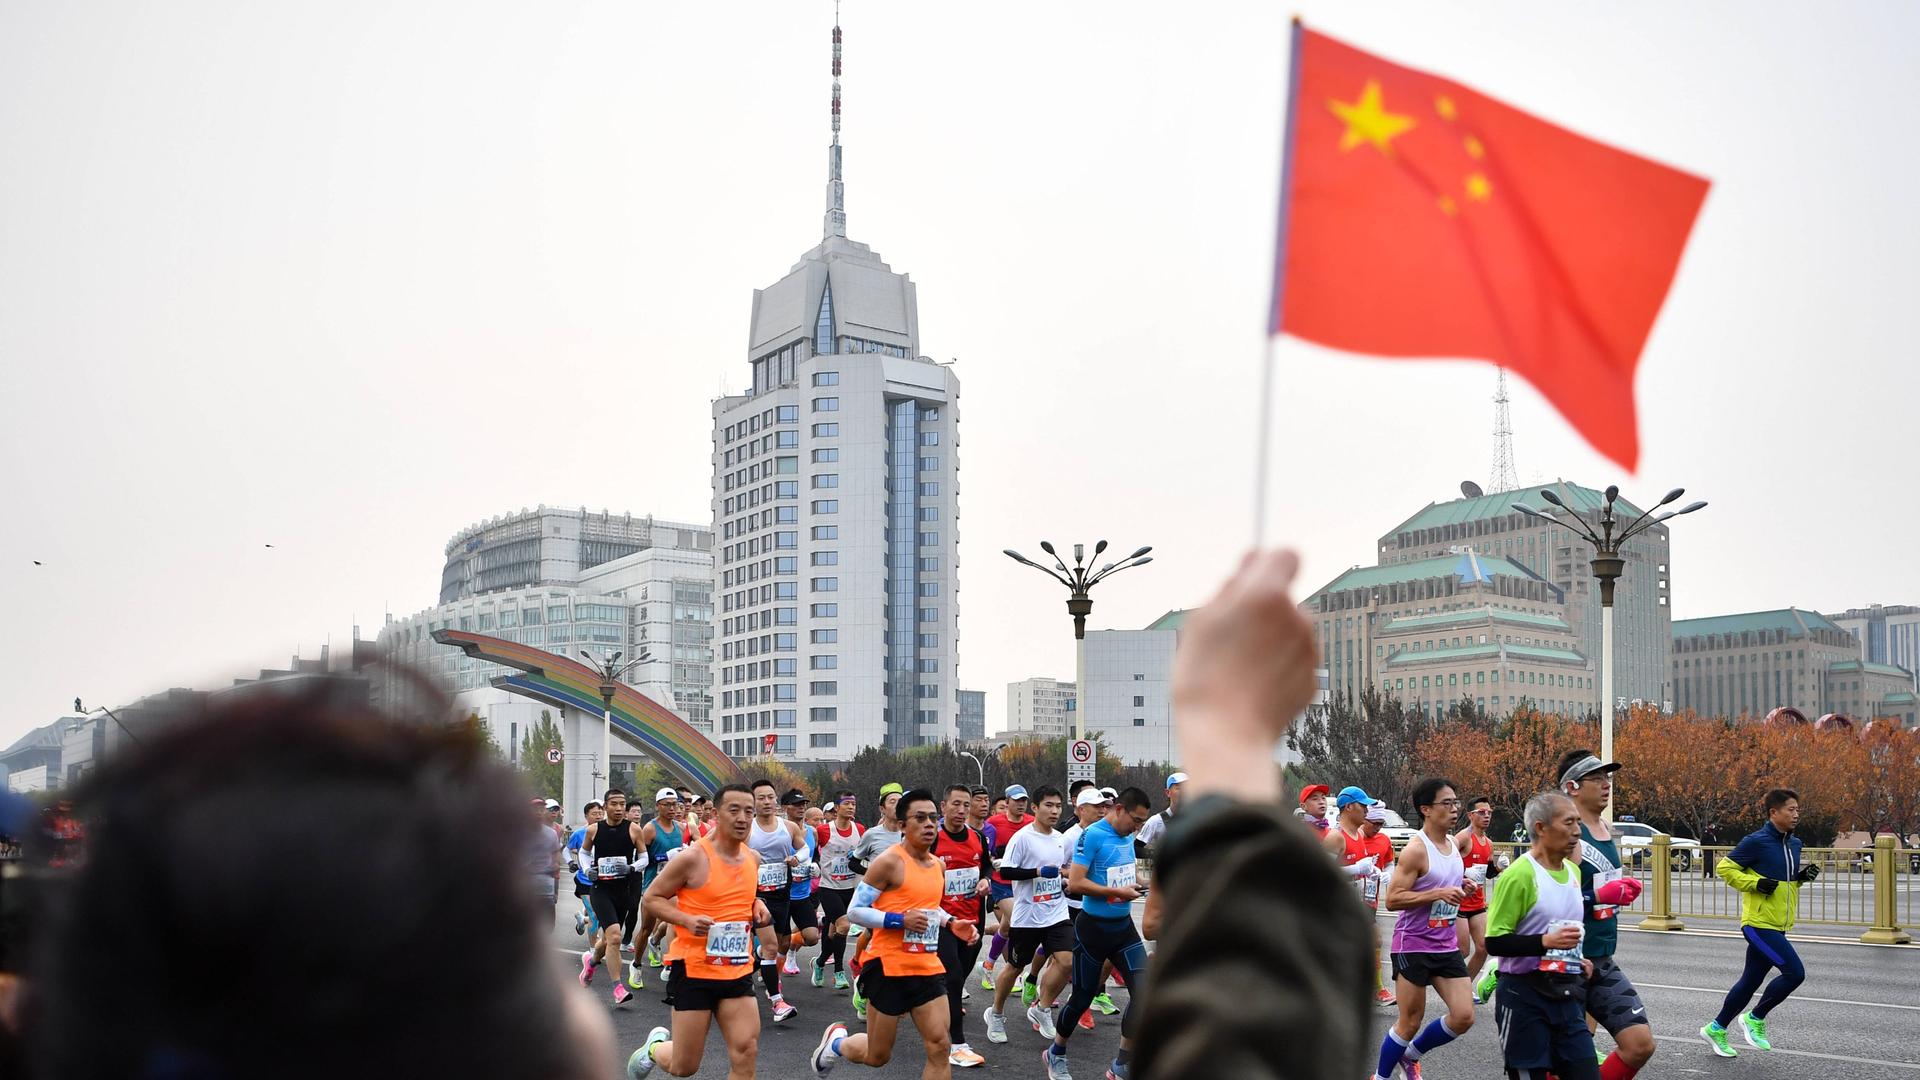 Sportlerinnen und Sportler in bunter Laufkleidung bahnen sich ihren Weg durch die chinesische Hauptstadt. Am Rand stehen Zuschauer und feuern die Teilnehmenden an. Eine Person winkt mit einer kleinen chinesischen Flagge.